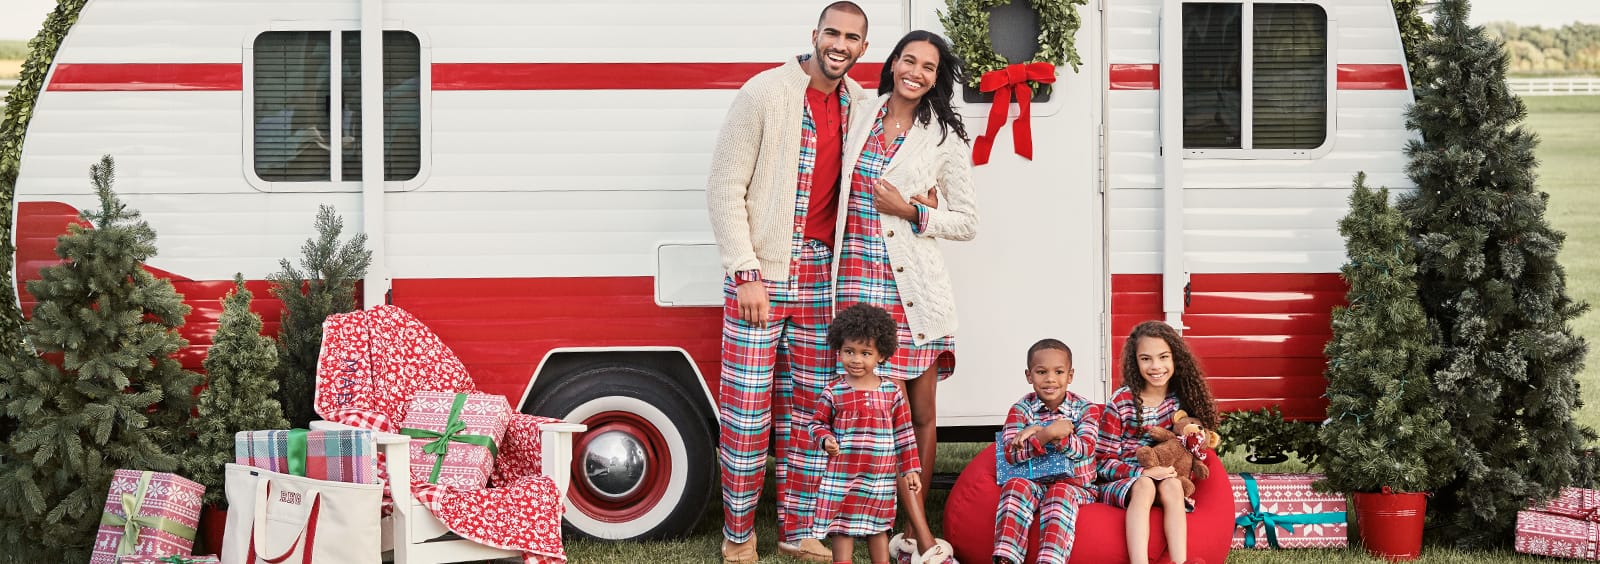 Passende Familien-Pyjamas, die Sie in dieser Urlaubssaison unbedingt kaufen sollten